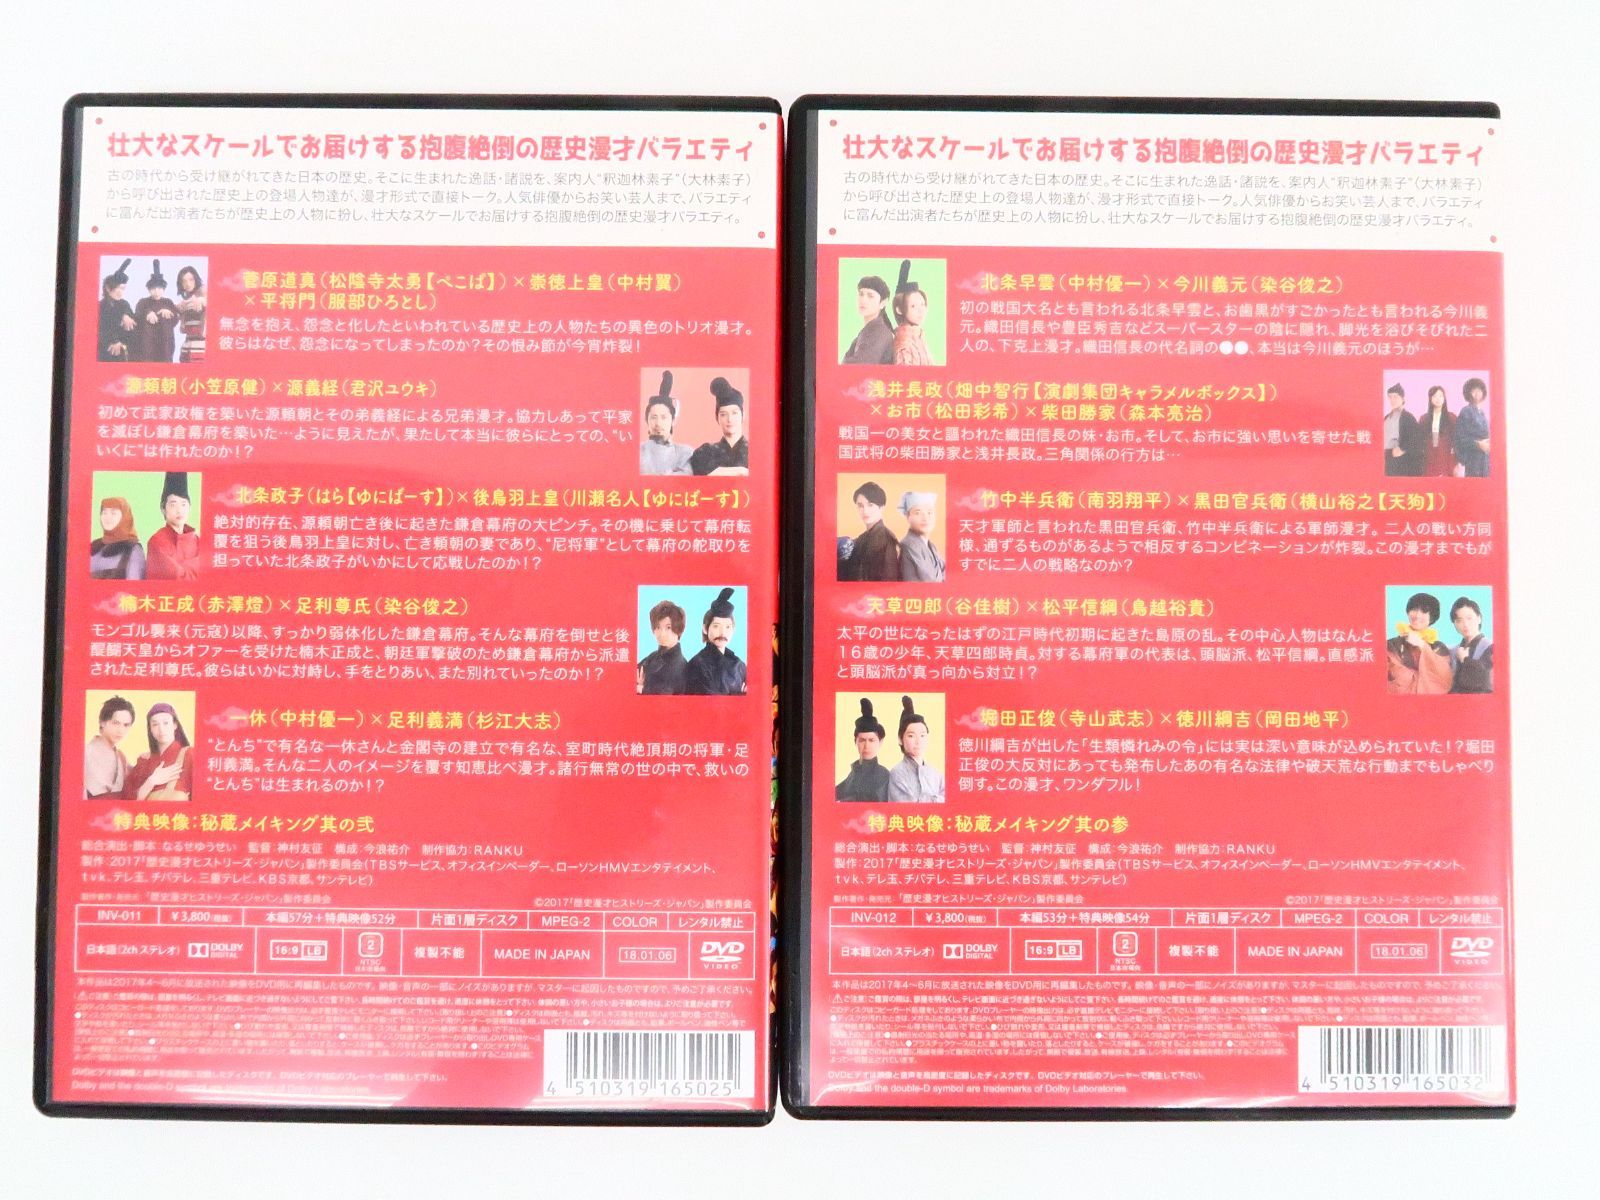 歴史漫才ヒストリーズ・ジャパン DVD-BOX - お笑い・バラエティ